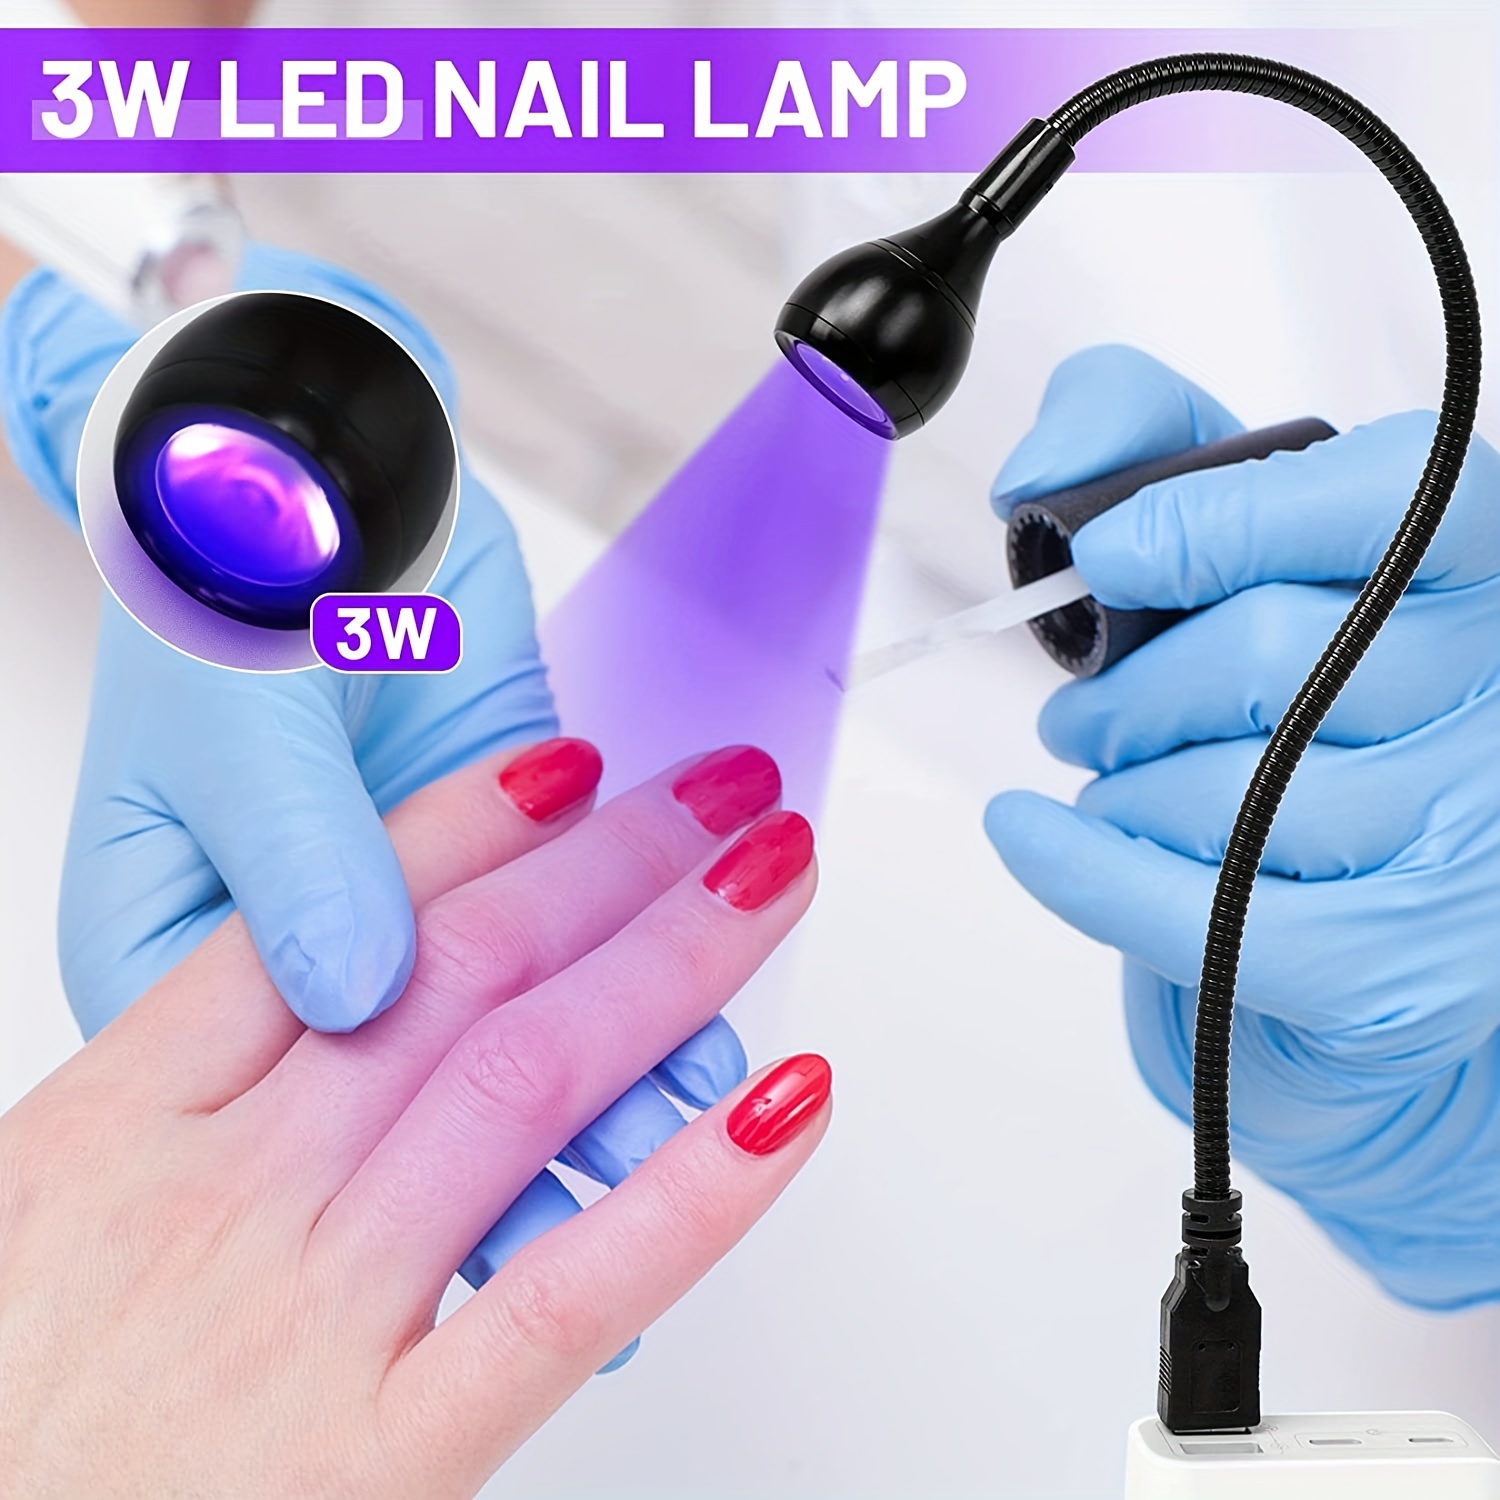 Mini Uv Led Nail Lamps, Nail Polish Curing Lamp, Mini Uv Light For